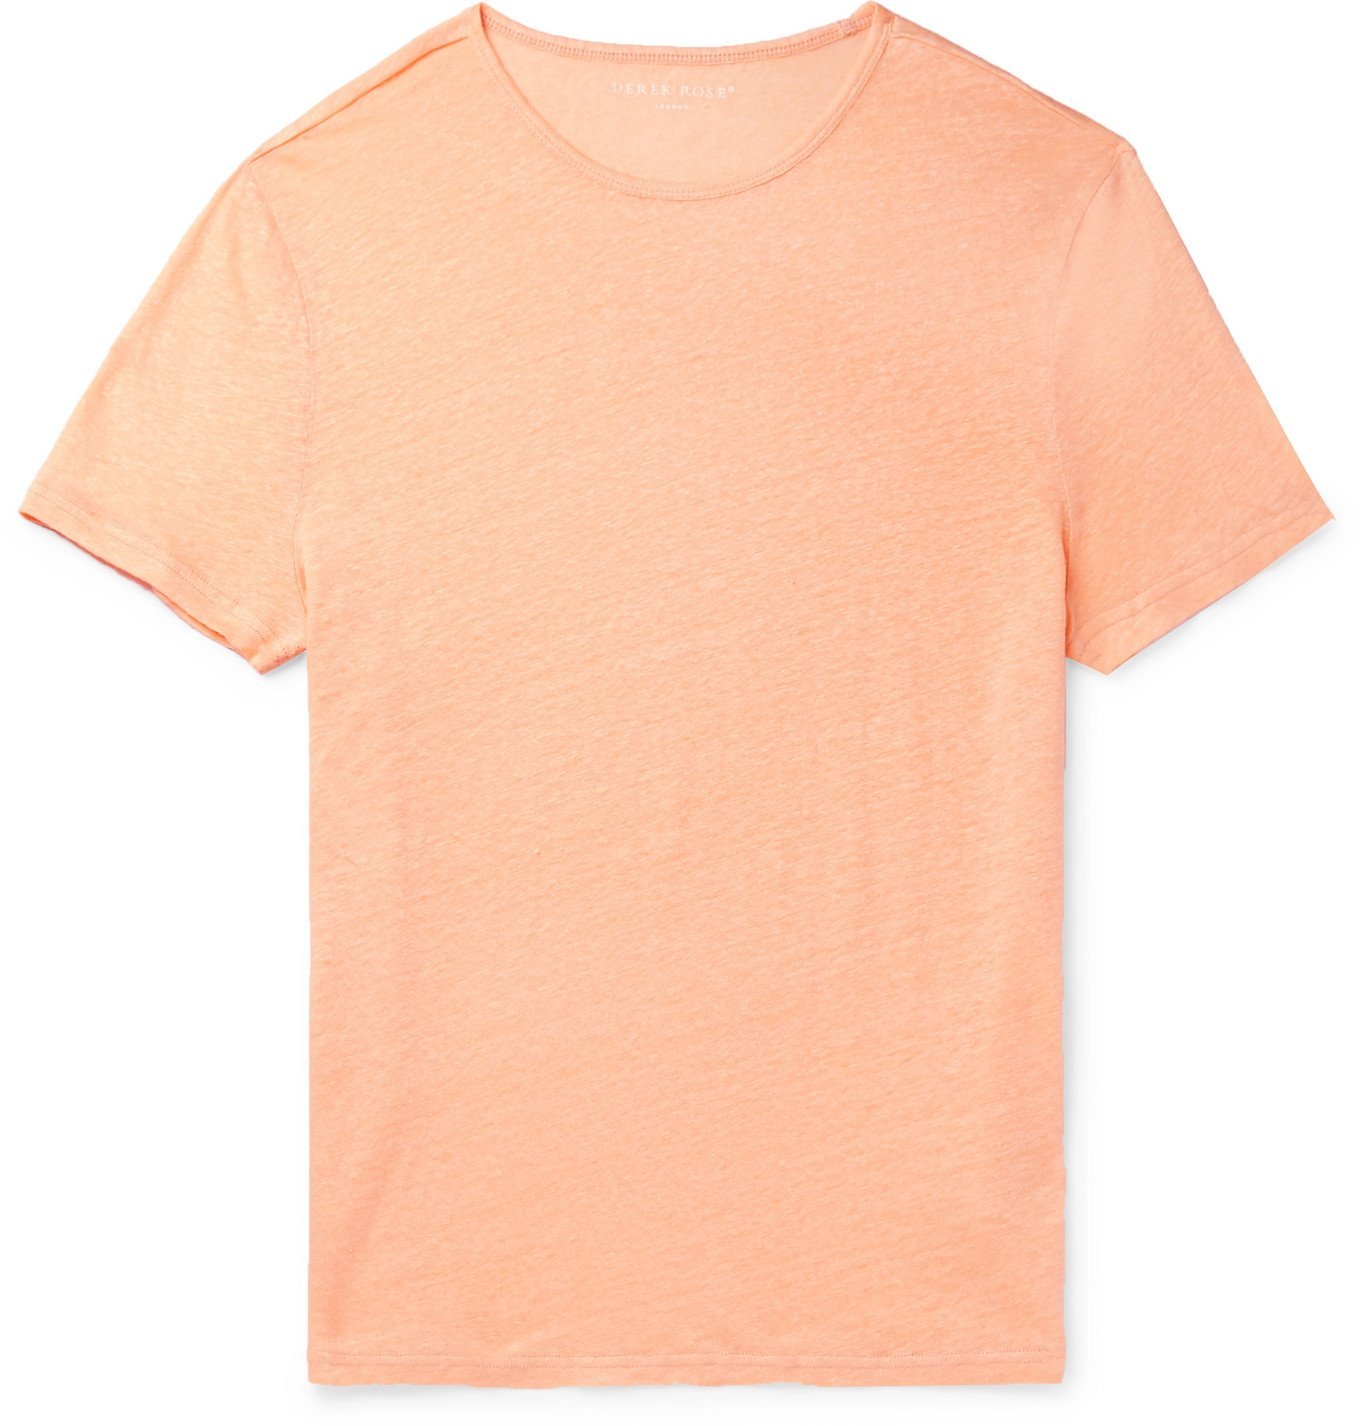 jordan 1 shirt orange